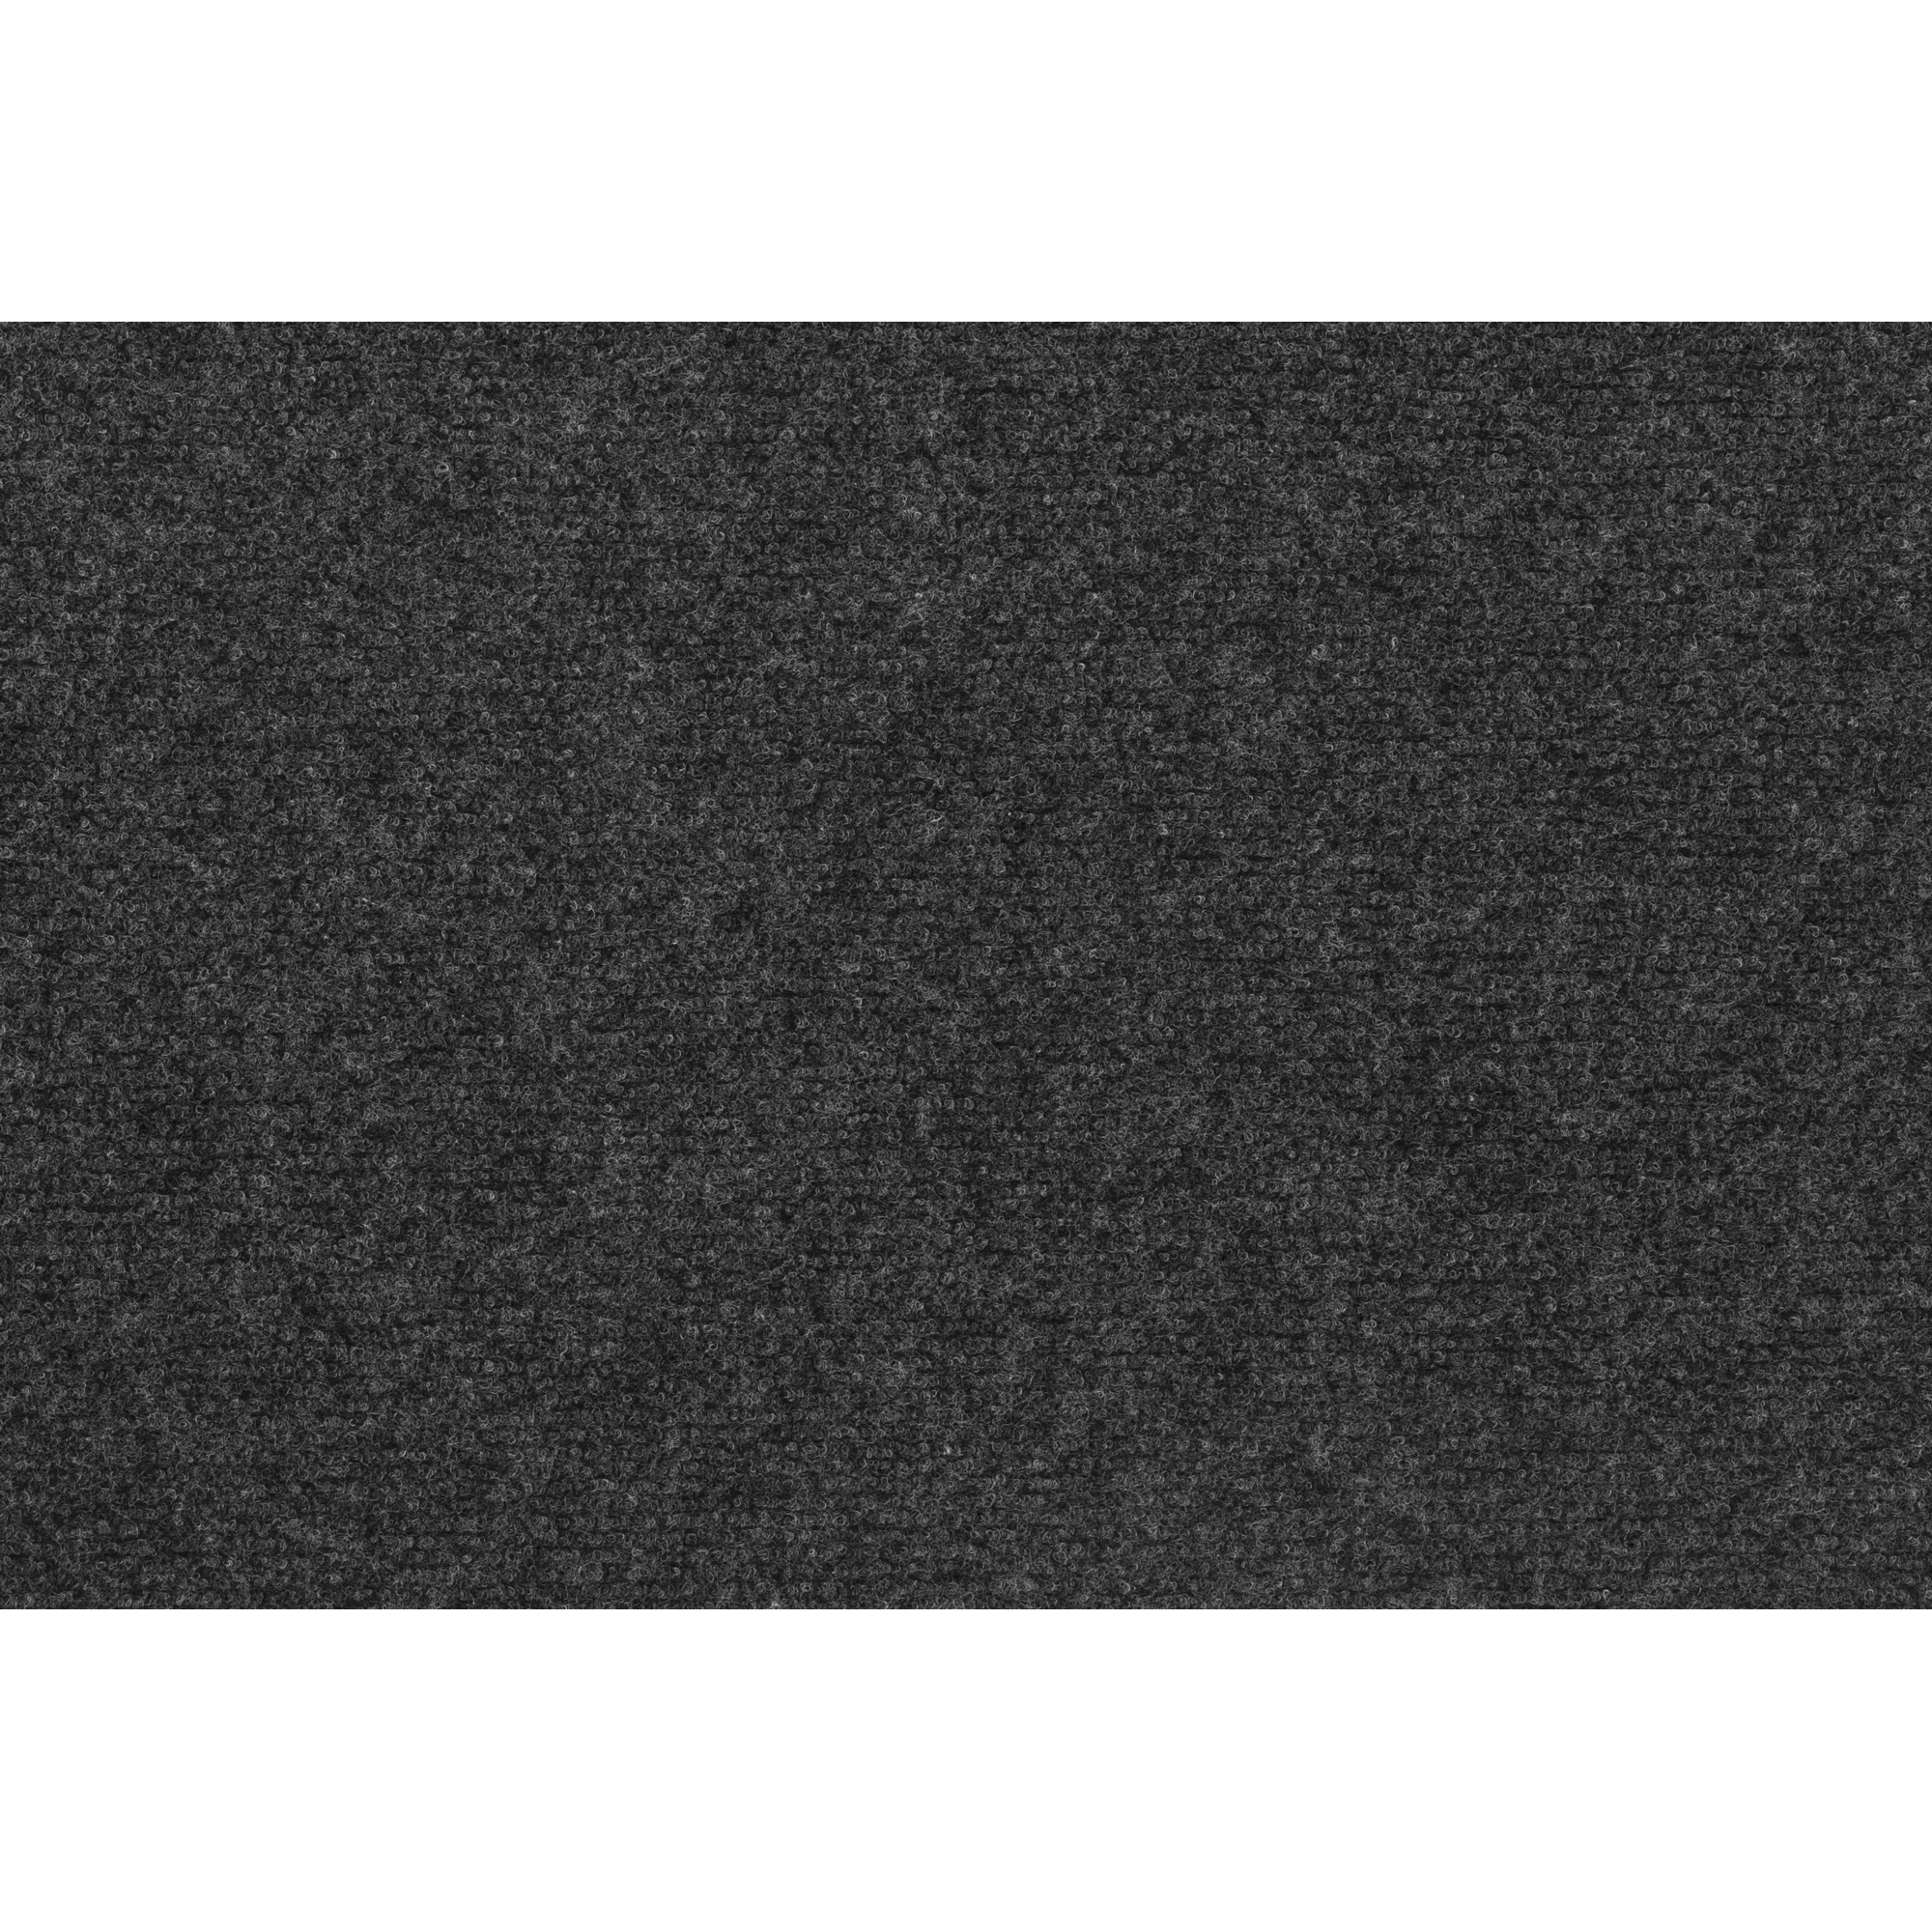 Teppichboden Malta Nadelfilz Grau Meterware / Breite 4 m kaufen